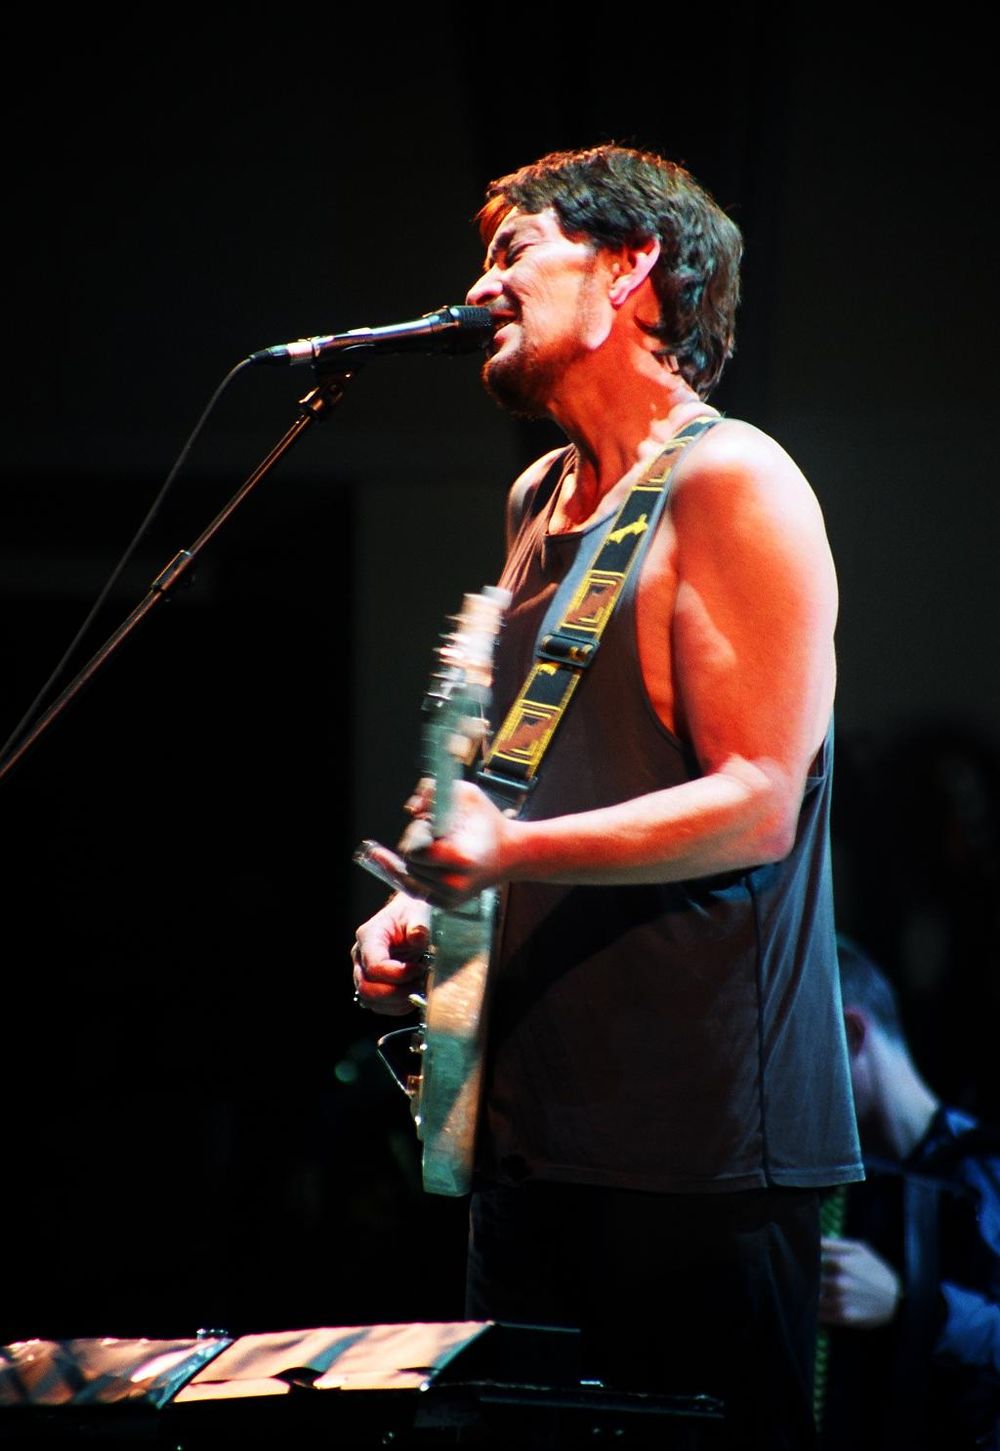 Poznati britanski muzičar Kris Rija natupiće petog. februara u Sava Centru, u okviru svoje evropske turneje koja počinje prvog januara 2010. godine